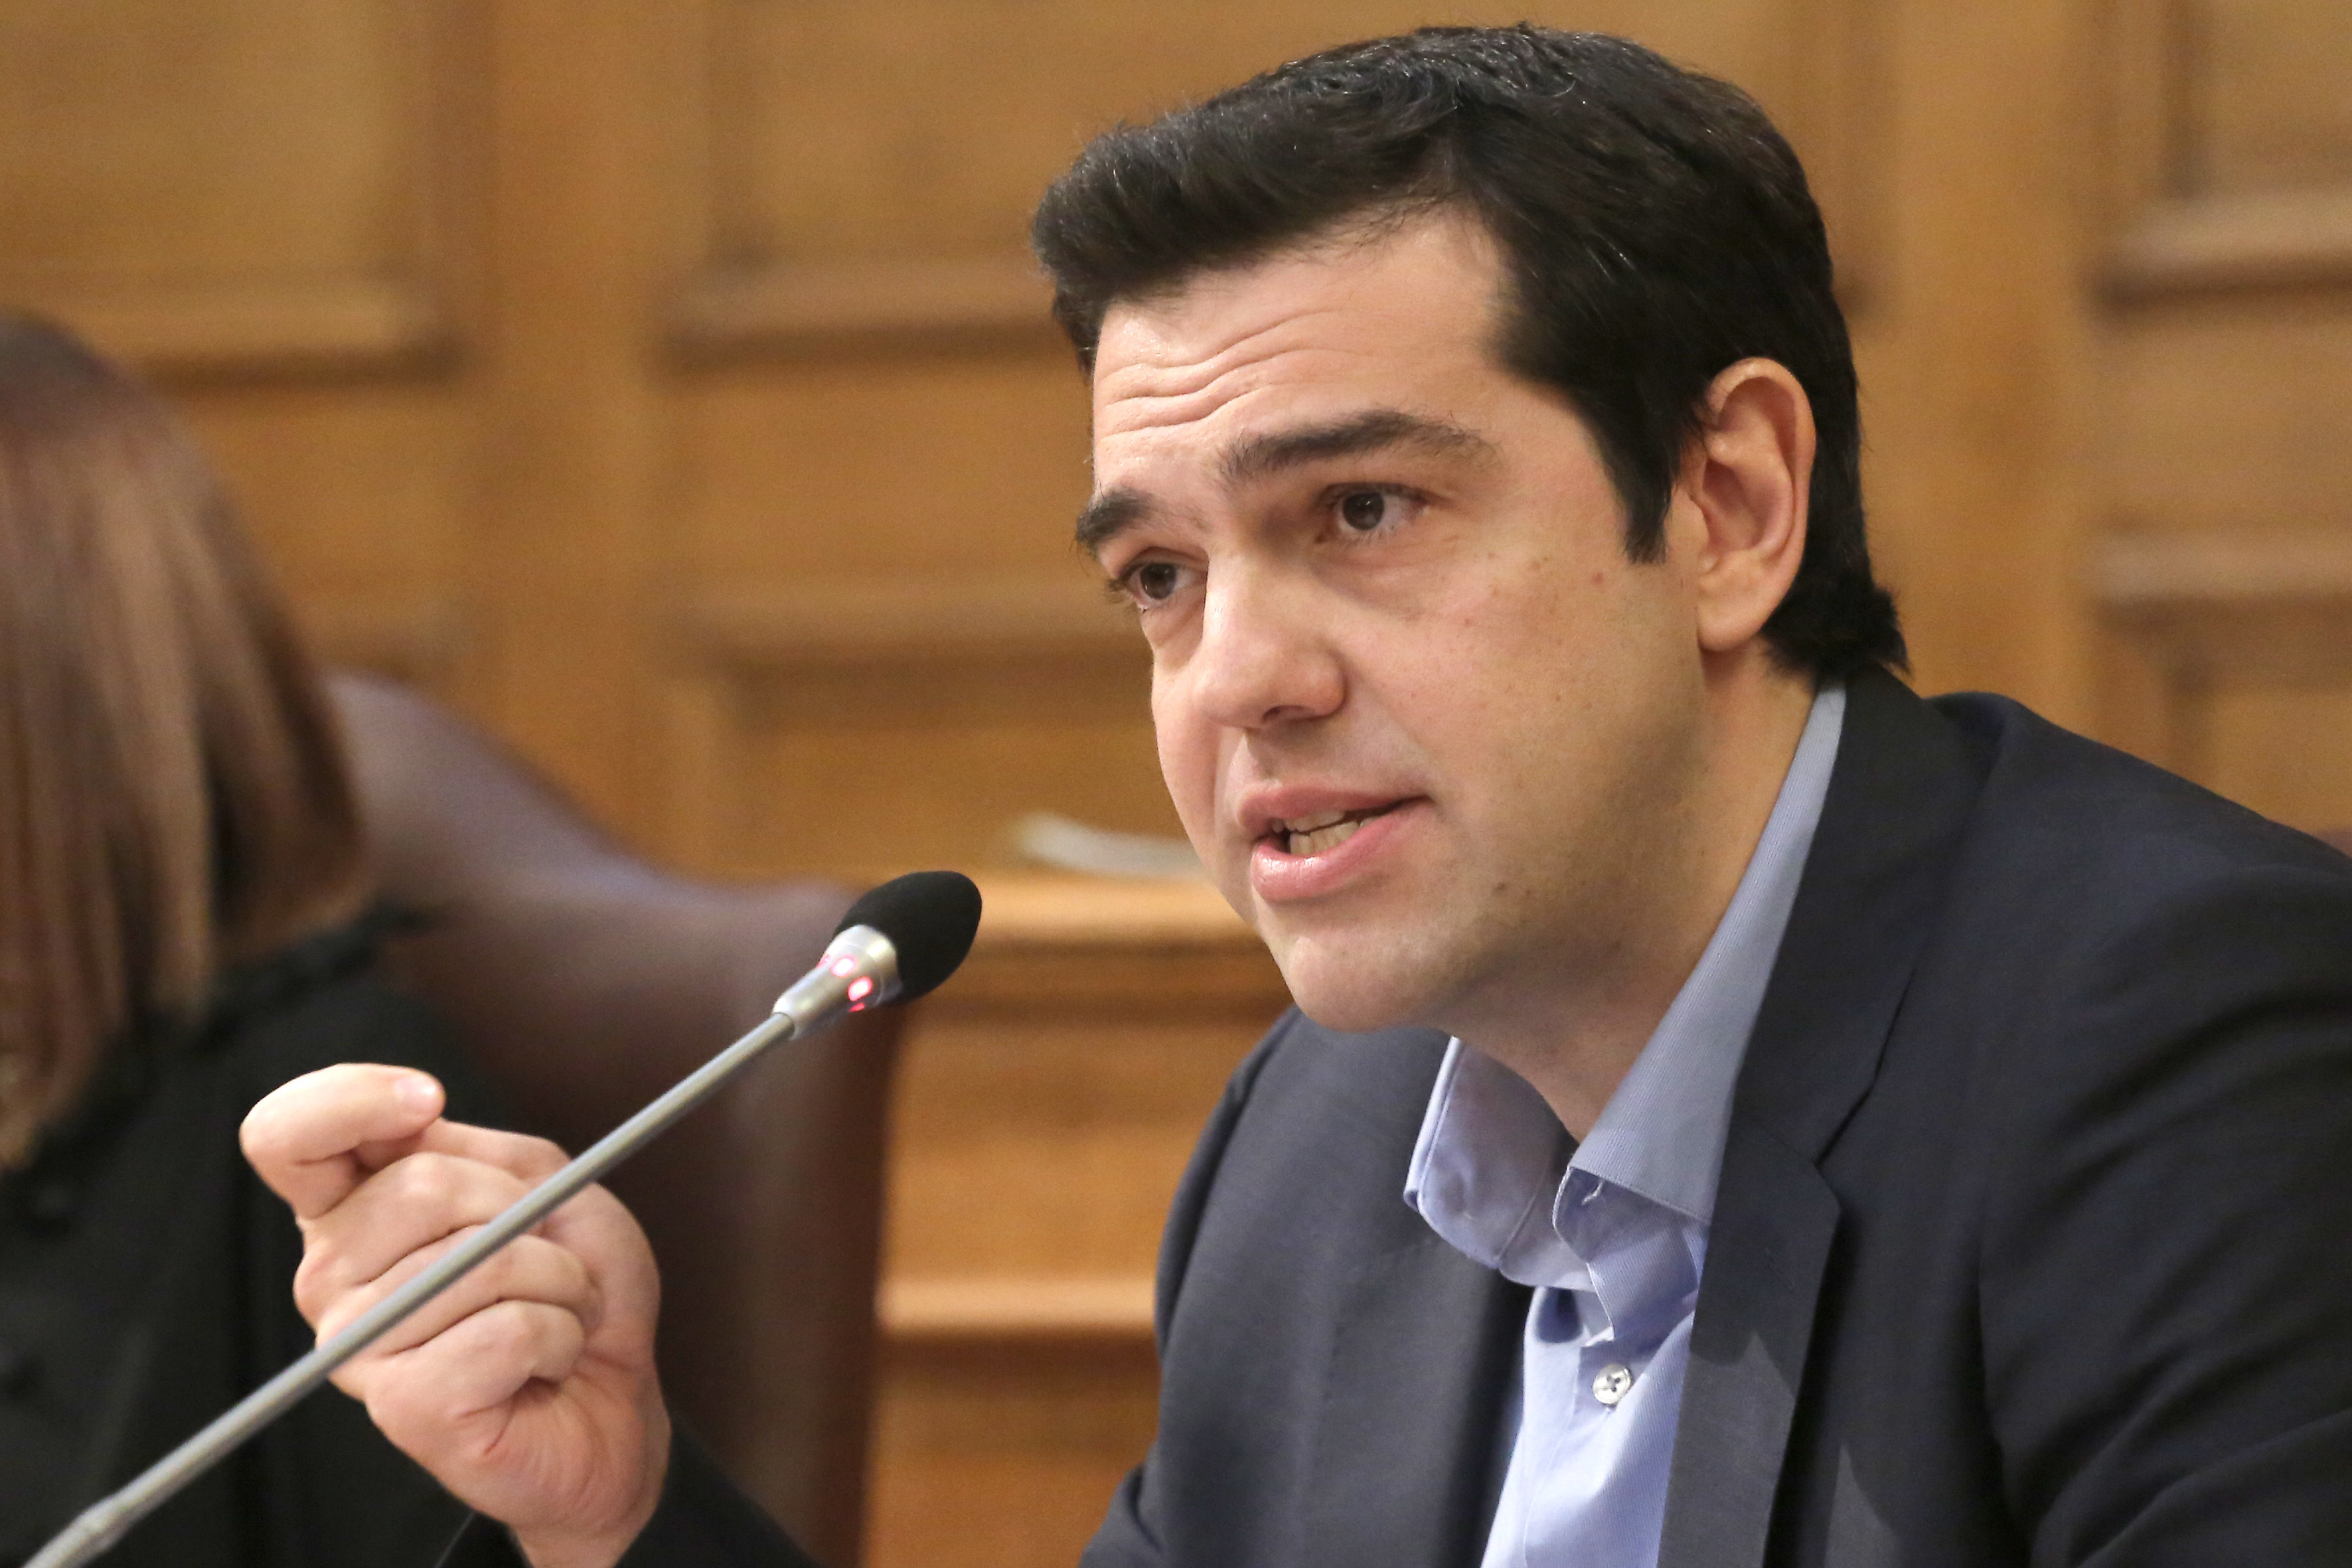 Κατηγορίες ΣΥΡΙΖΑ σε κυβέρνηση για “επικοινωνιακό αντιπερισπασμό” με αφορμή το αντιρατσιστικό